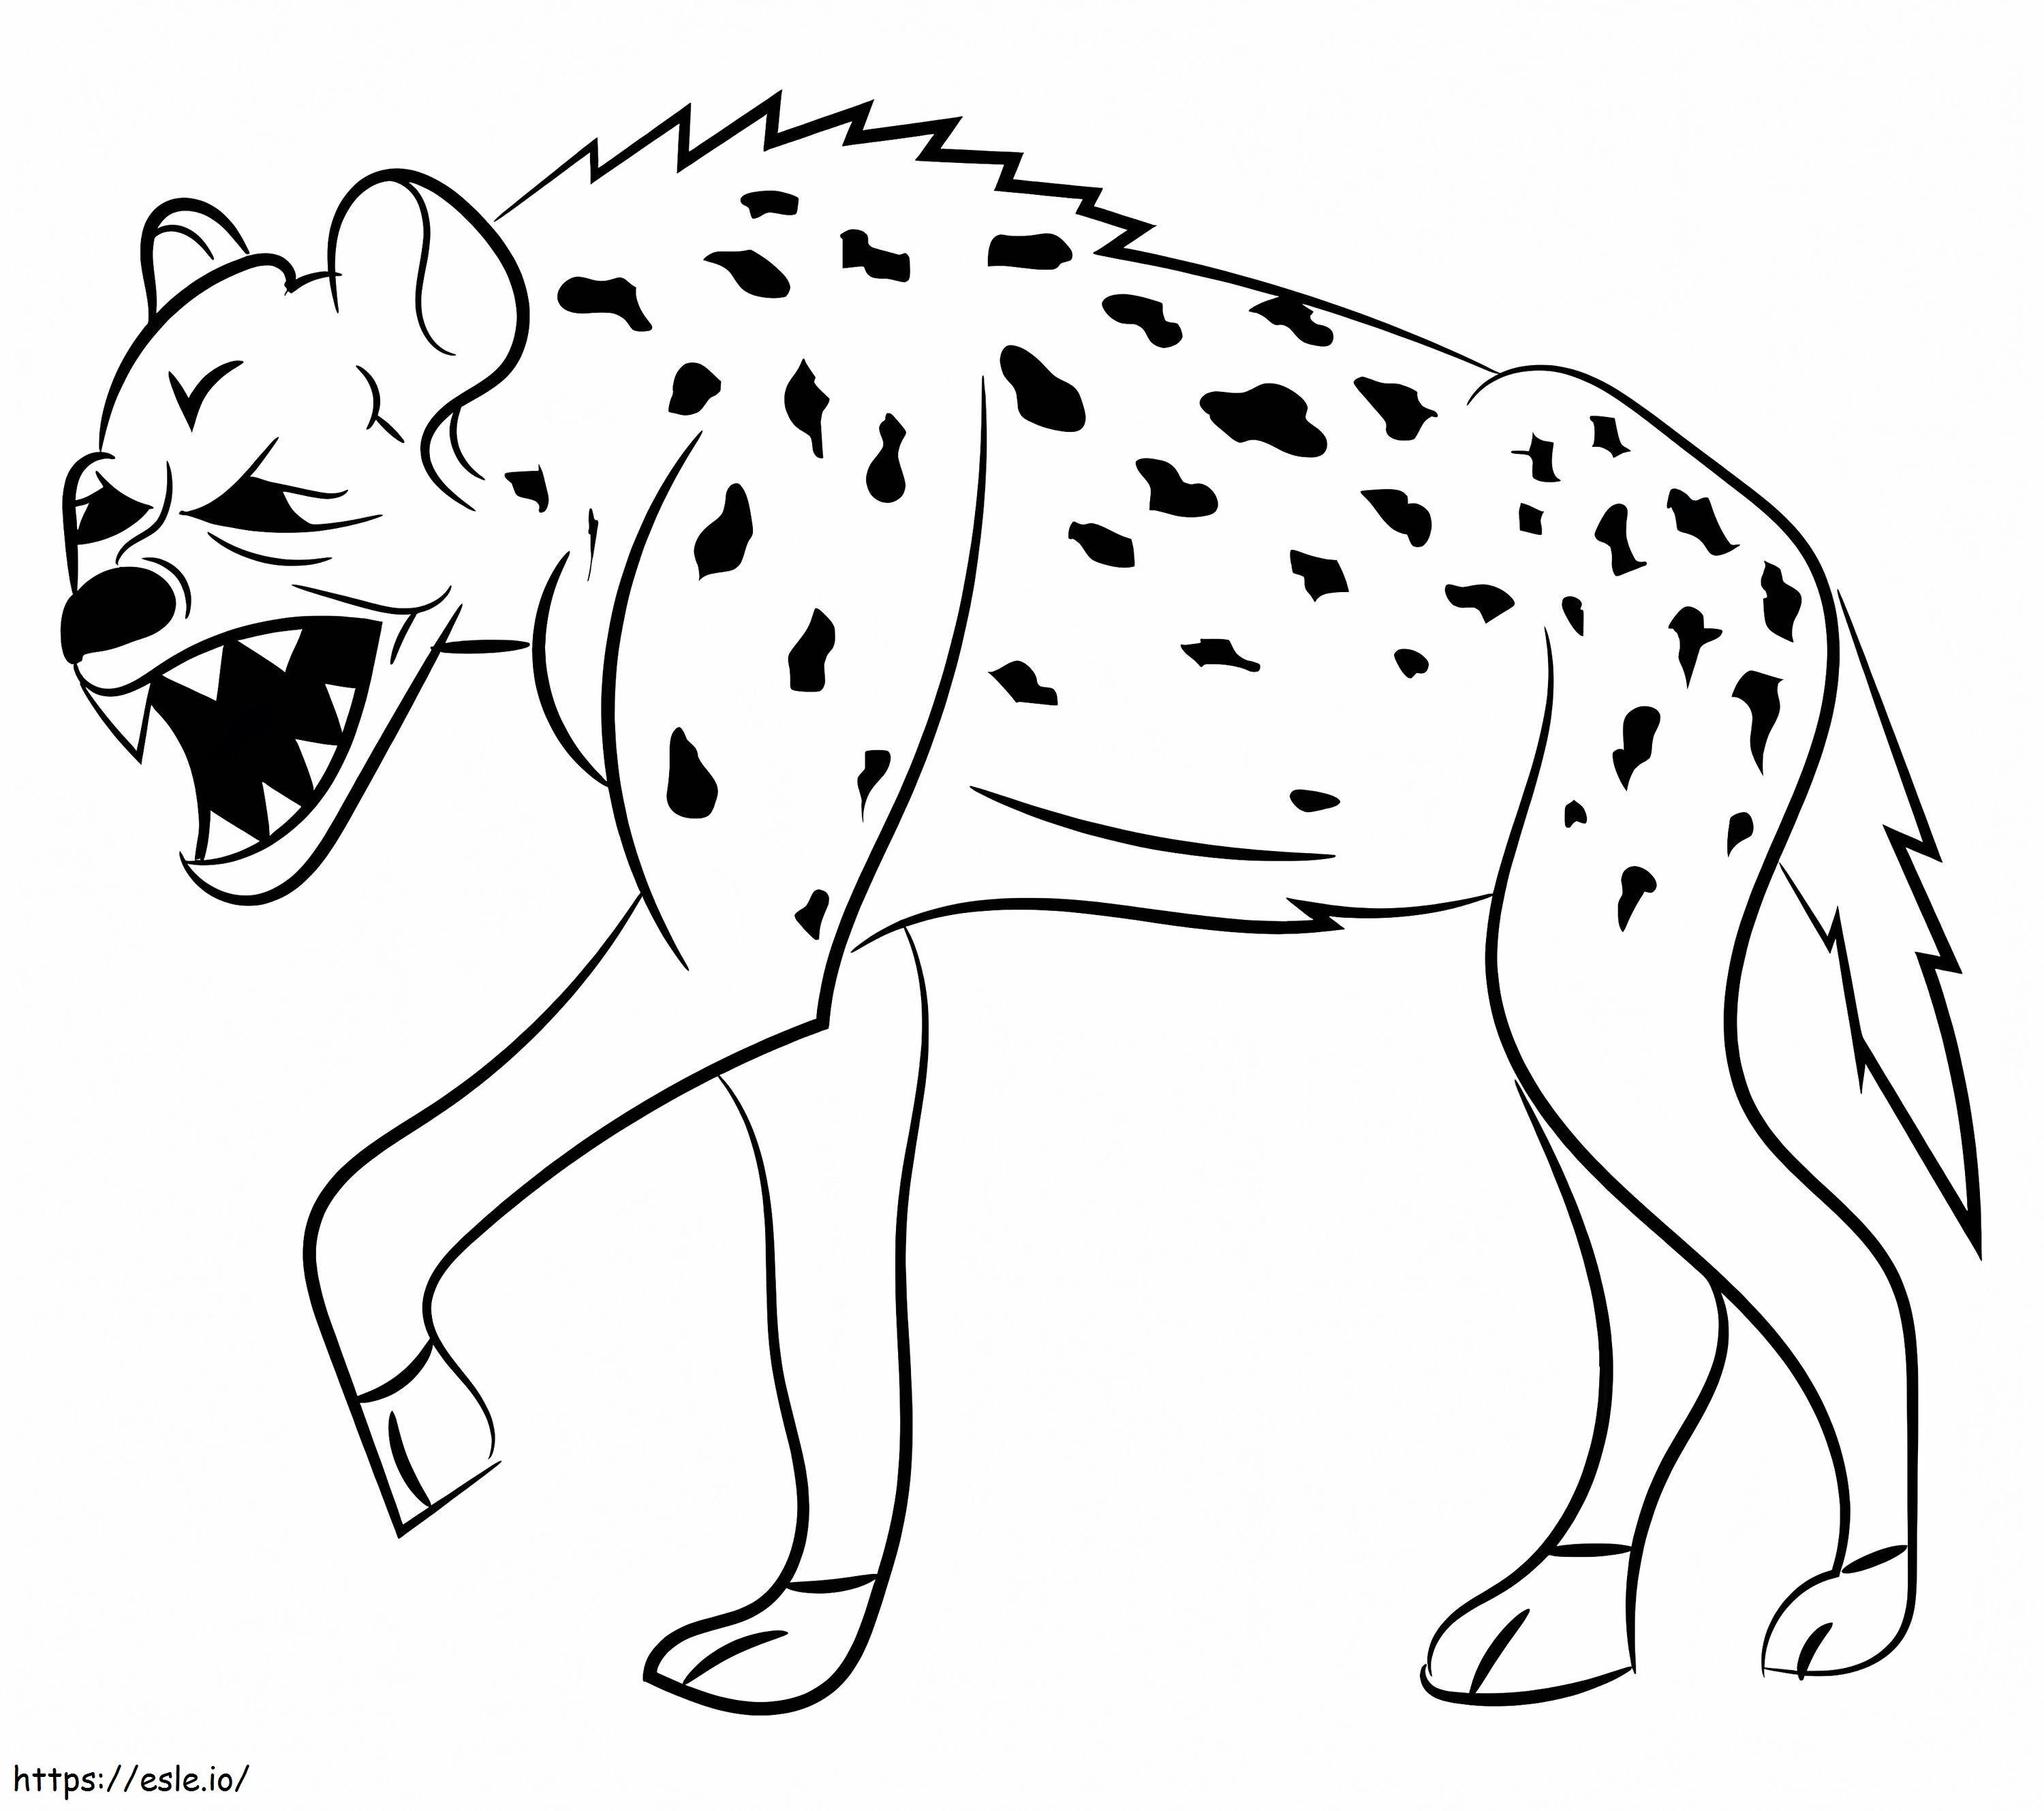 Straszna hiena kolorowanka